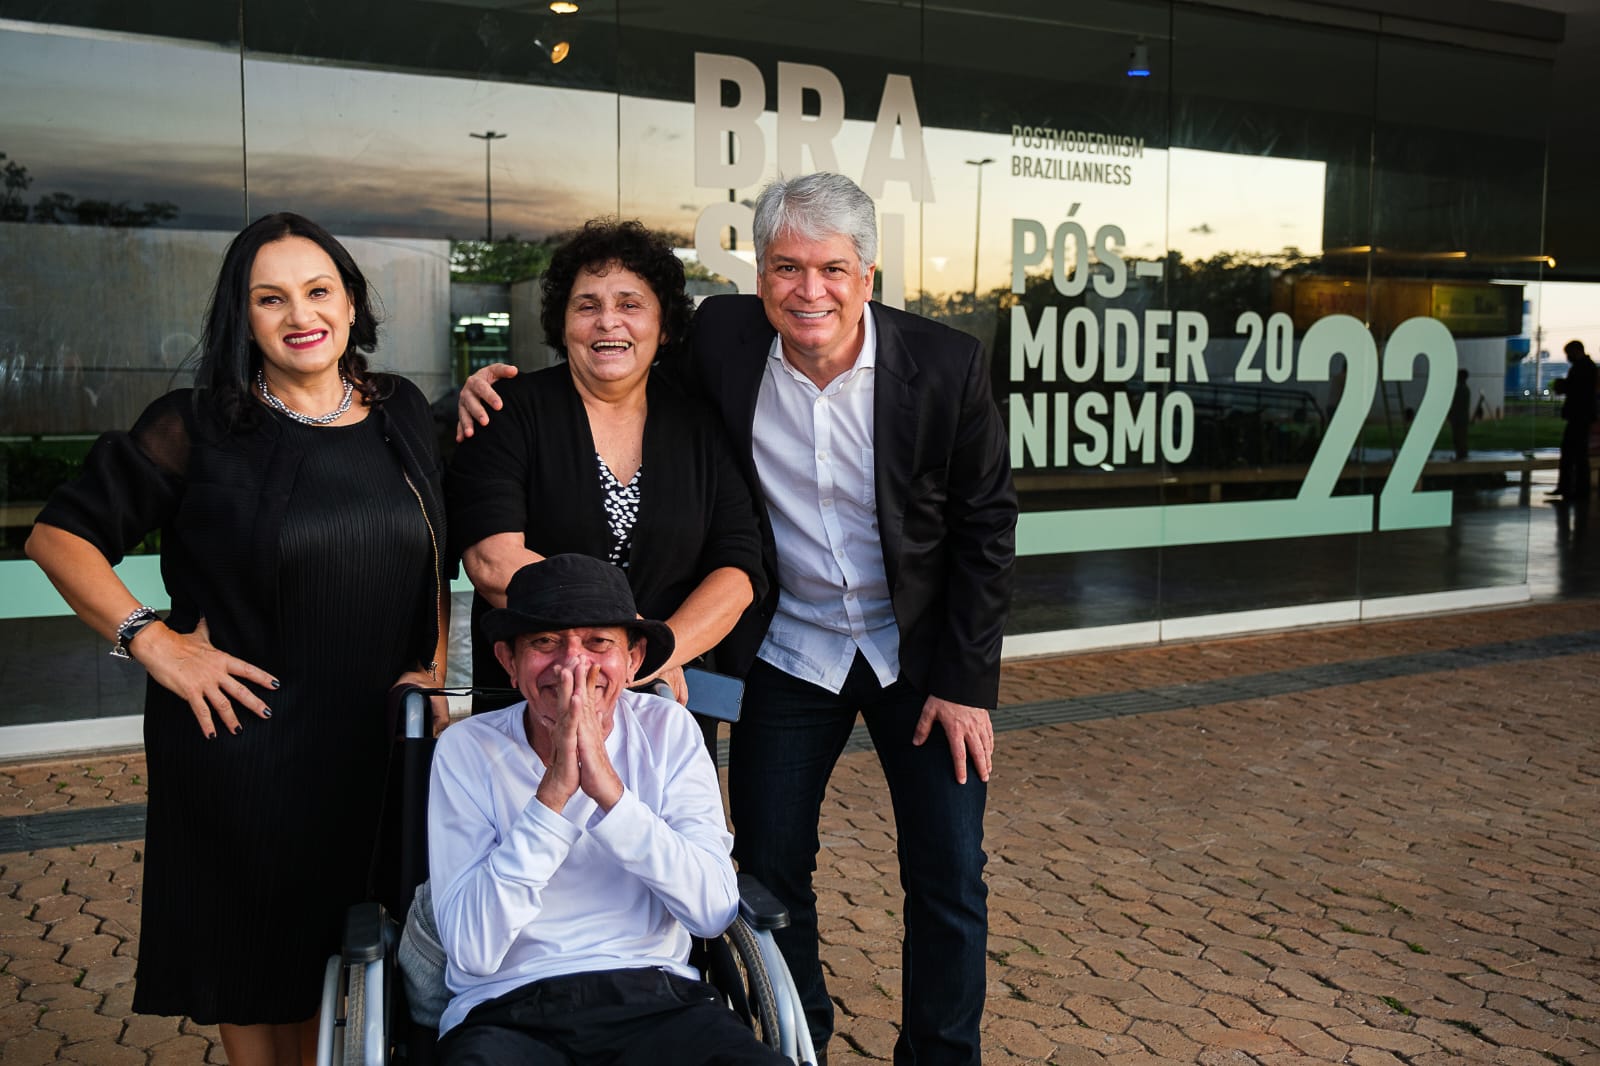 Francisco de Almeida e artistas cearenses expõem obras na mostra “Brasilidade Pós-Modernismo”, em Brasília